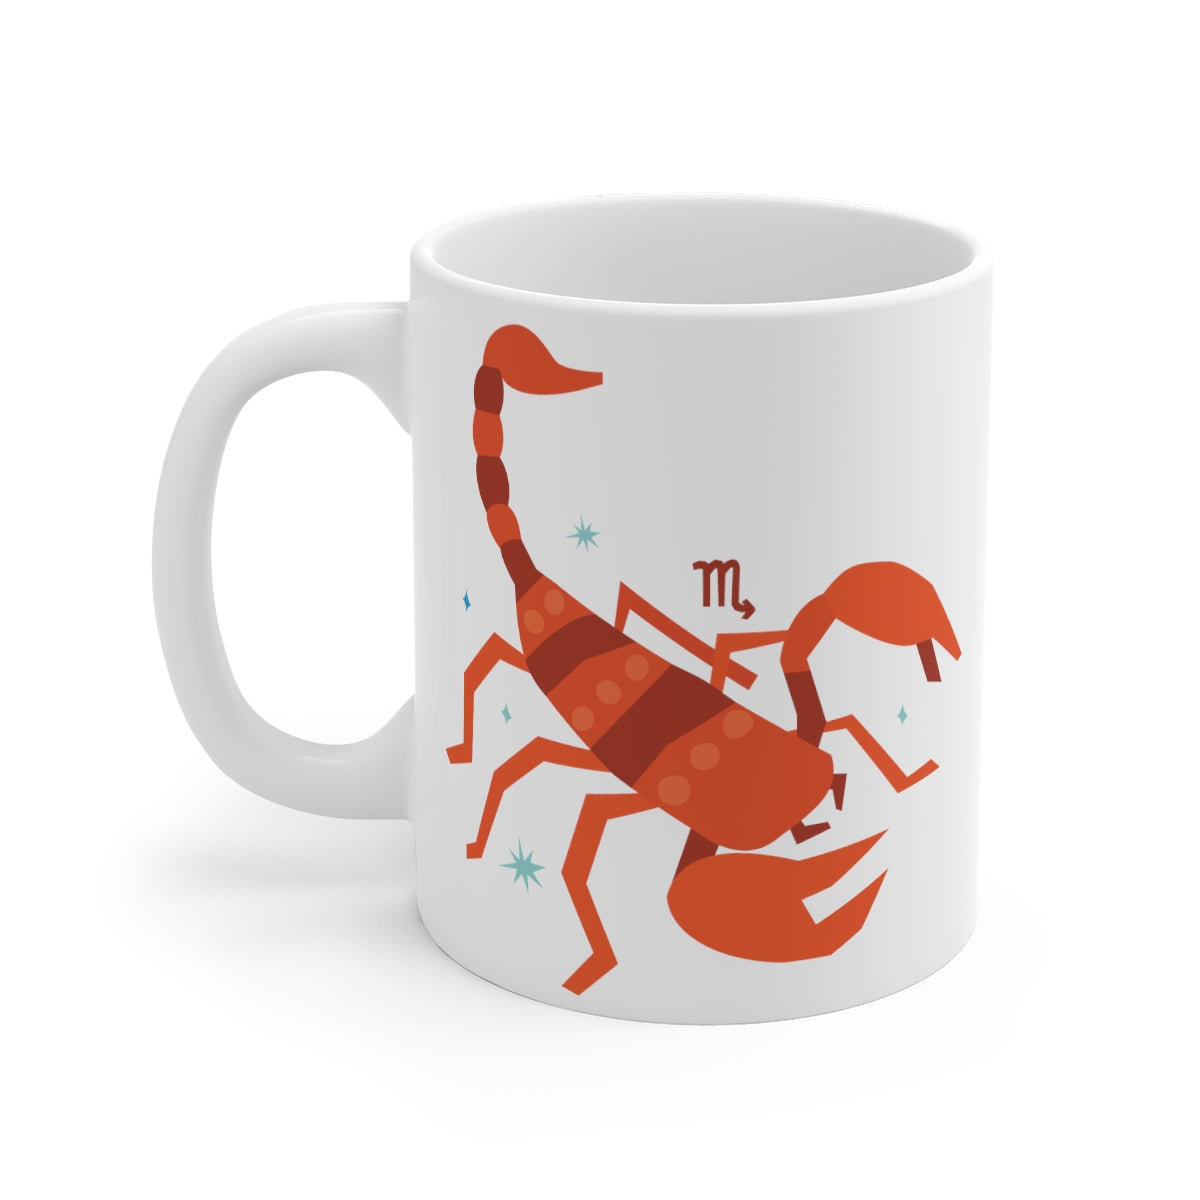 Personalized Scorpio Zodiac Mug 11oz Mugs  